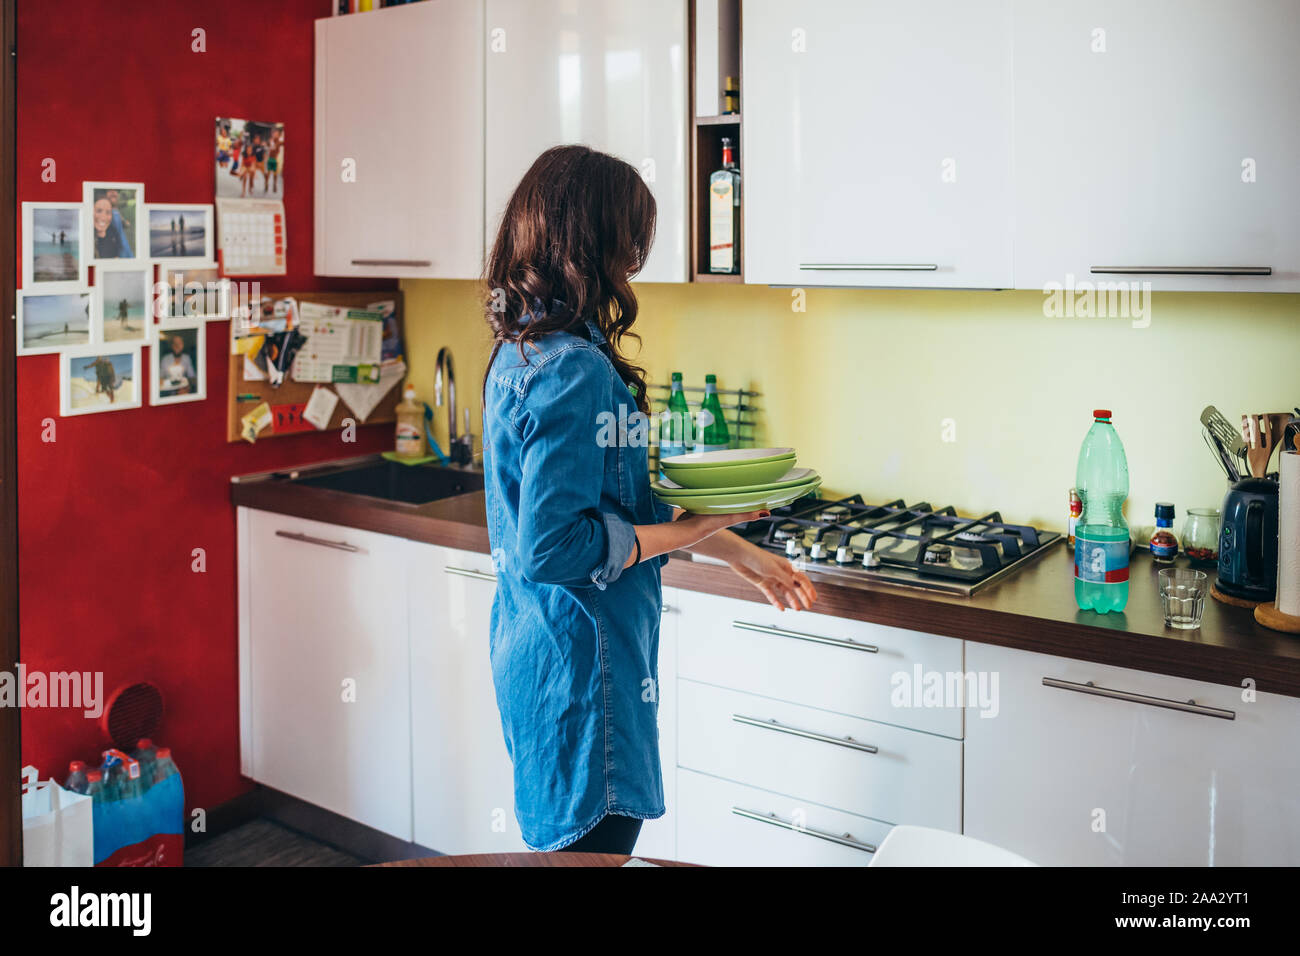 Junge Frau Kochen in der Küche zu Hause - Vorbereitung, Zweisamkeit, Teamarbeit Konzept Stockfoto